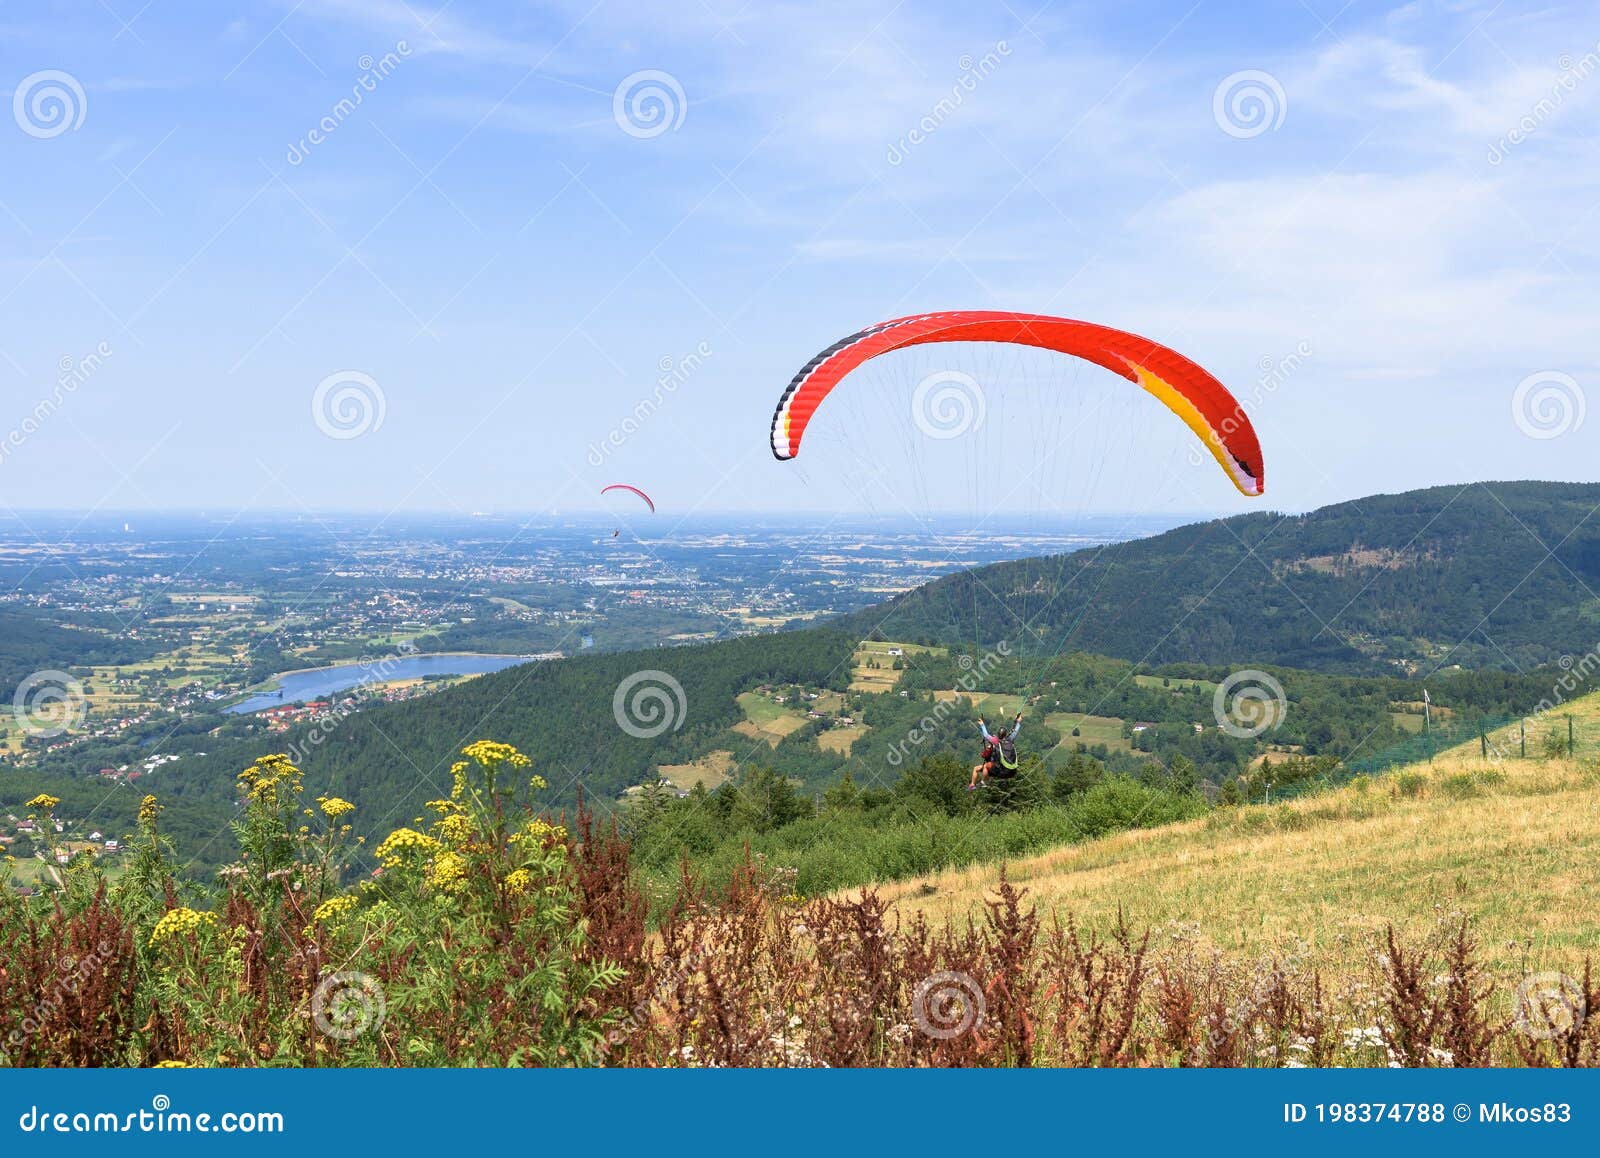 paragliders start their flight on zar mountain in poland